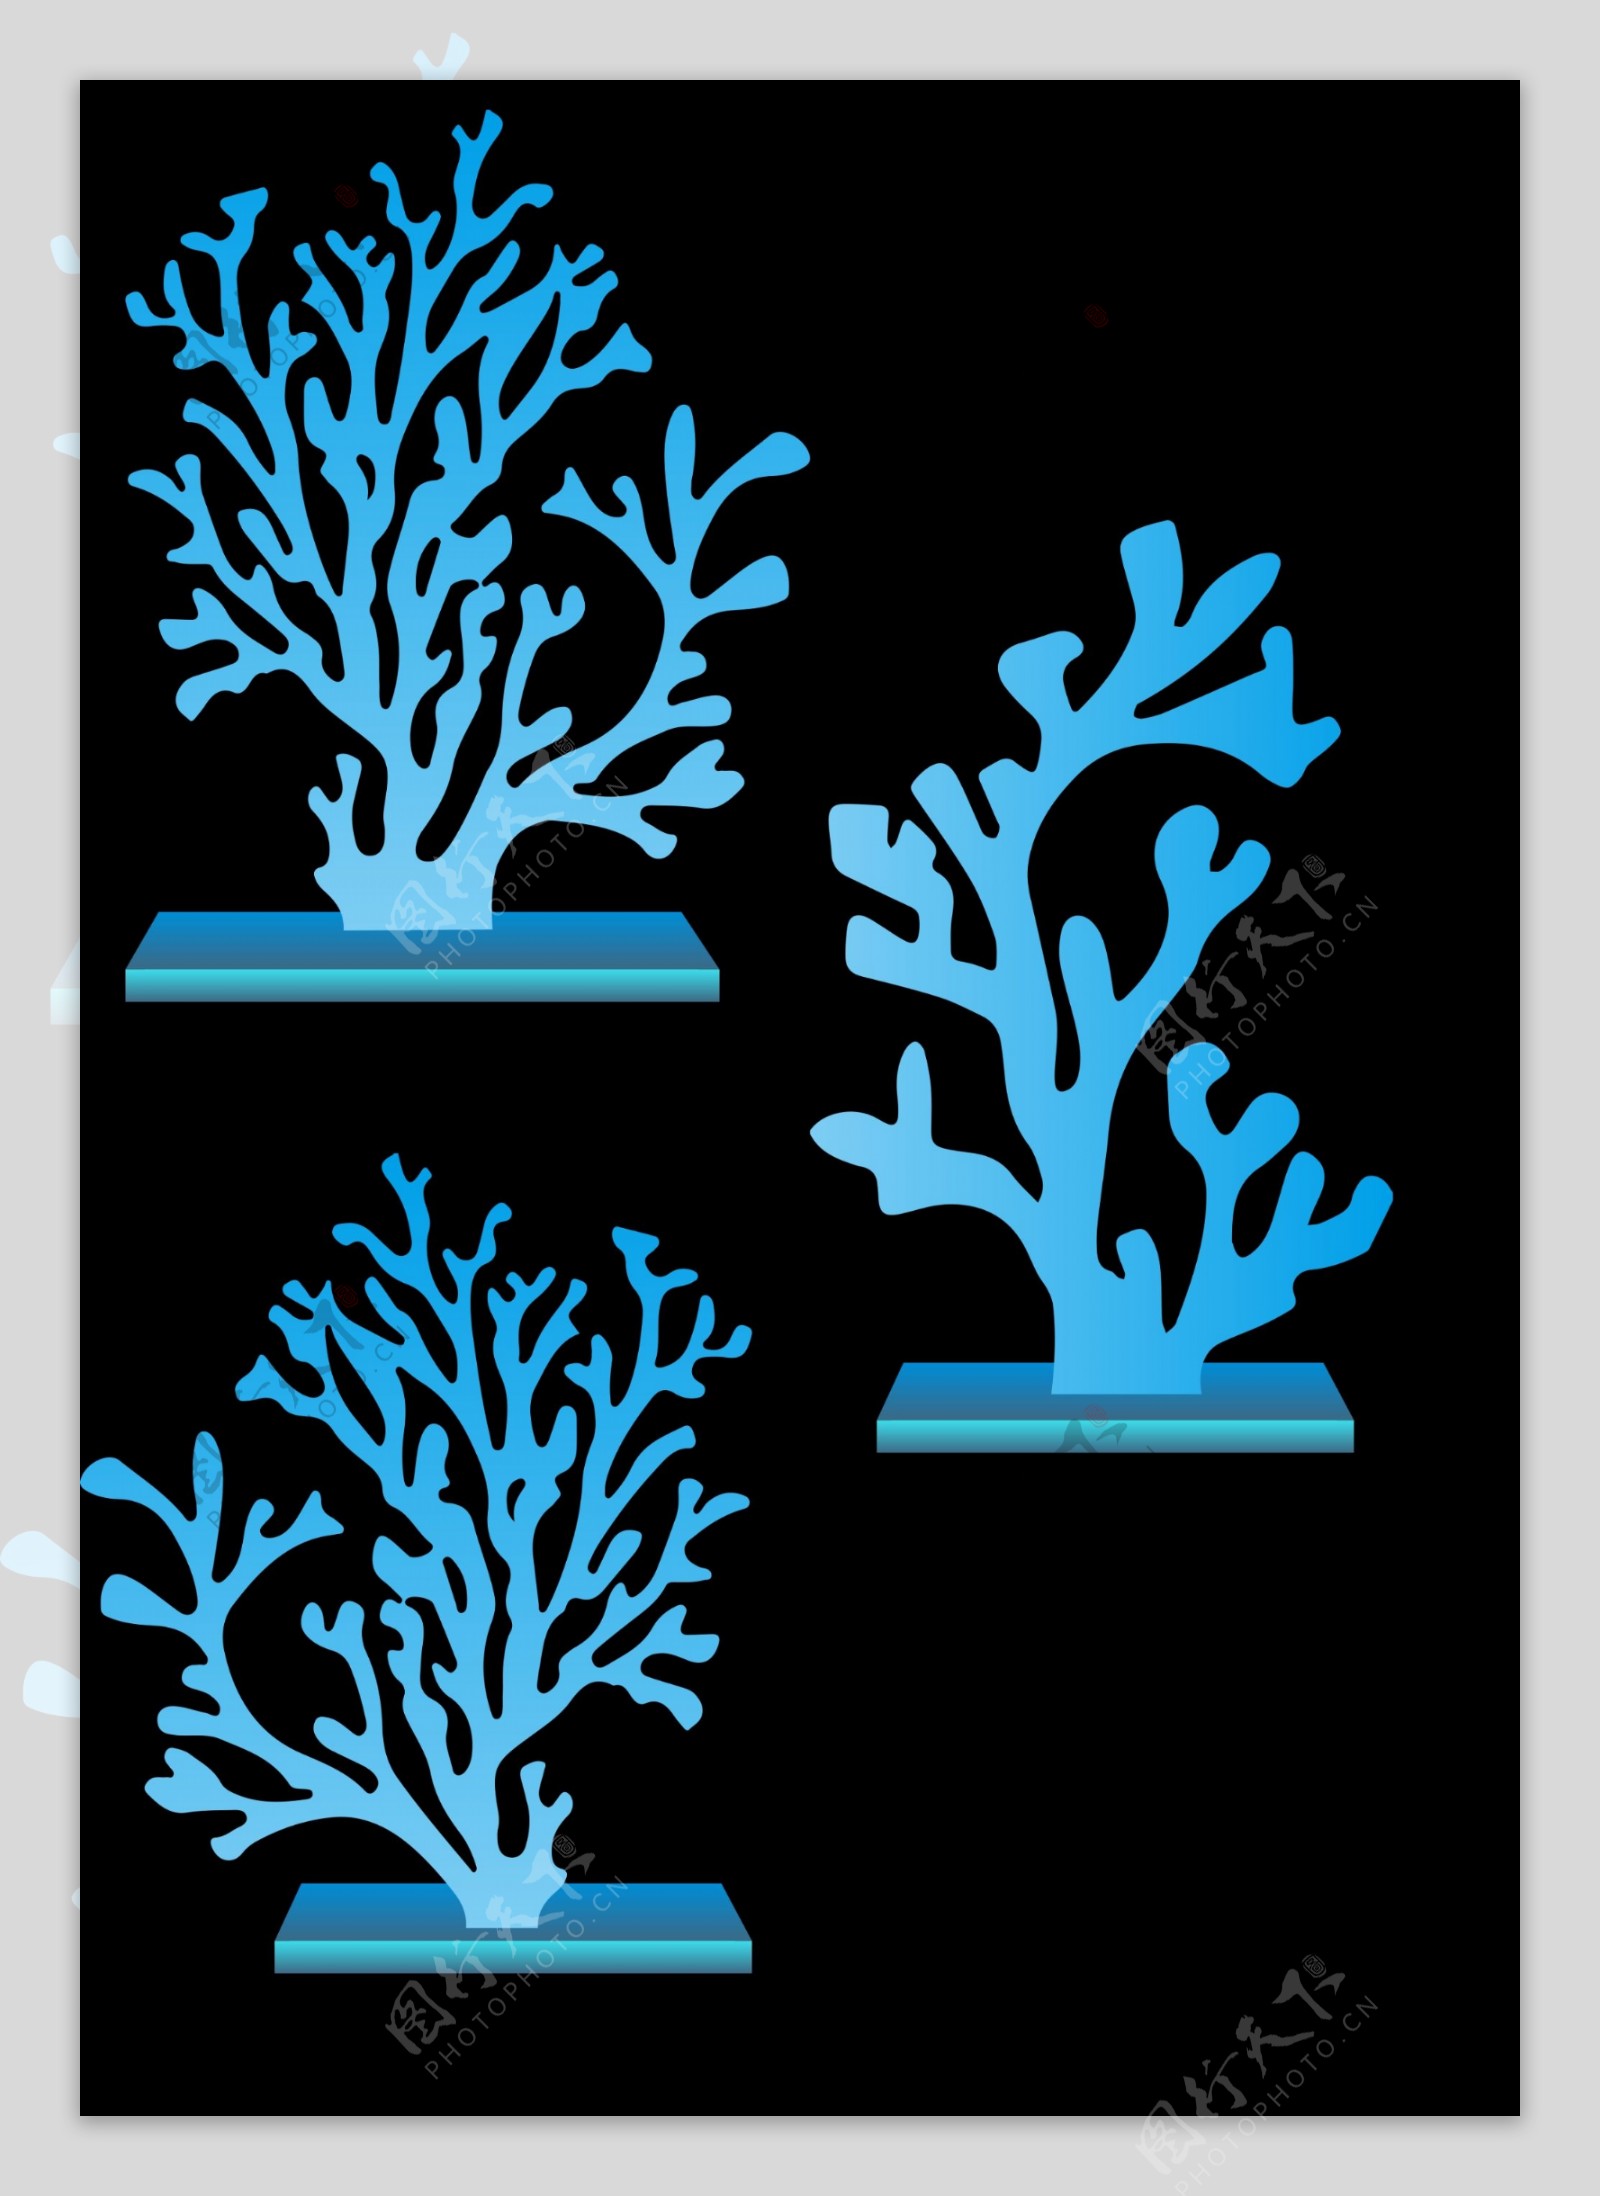 珊瑚树矢量图片